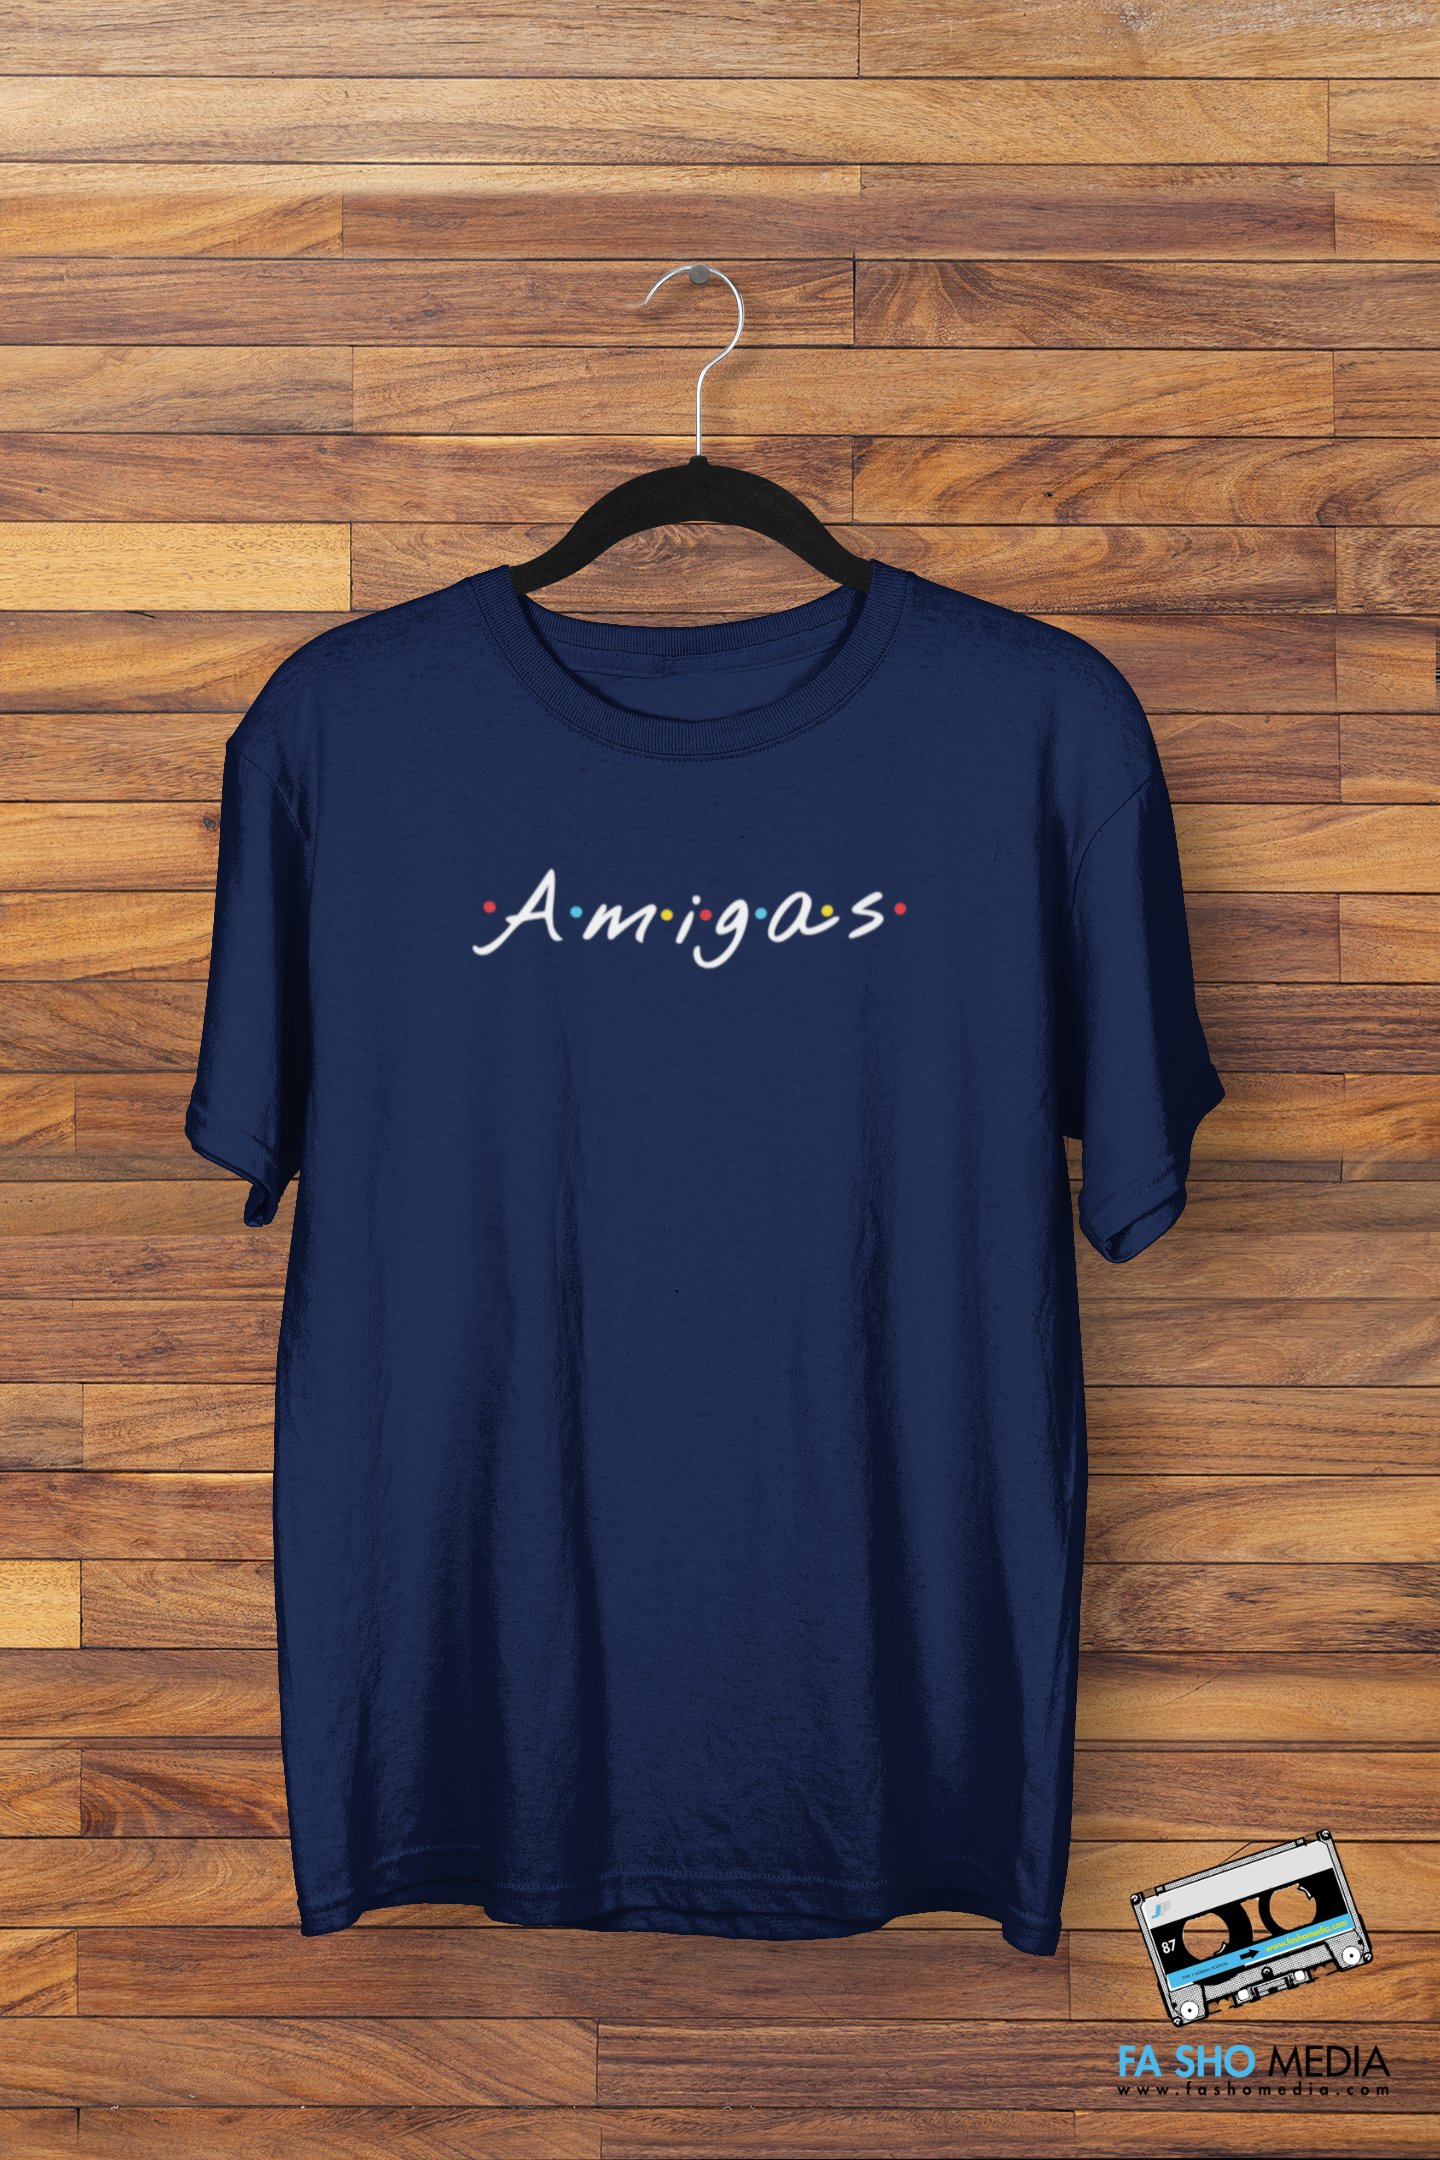 Amigas Shirt (Women's)